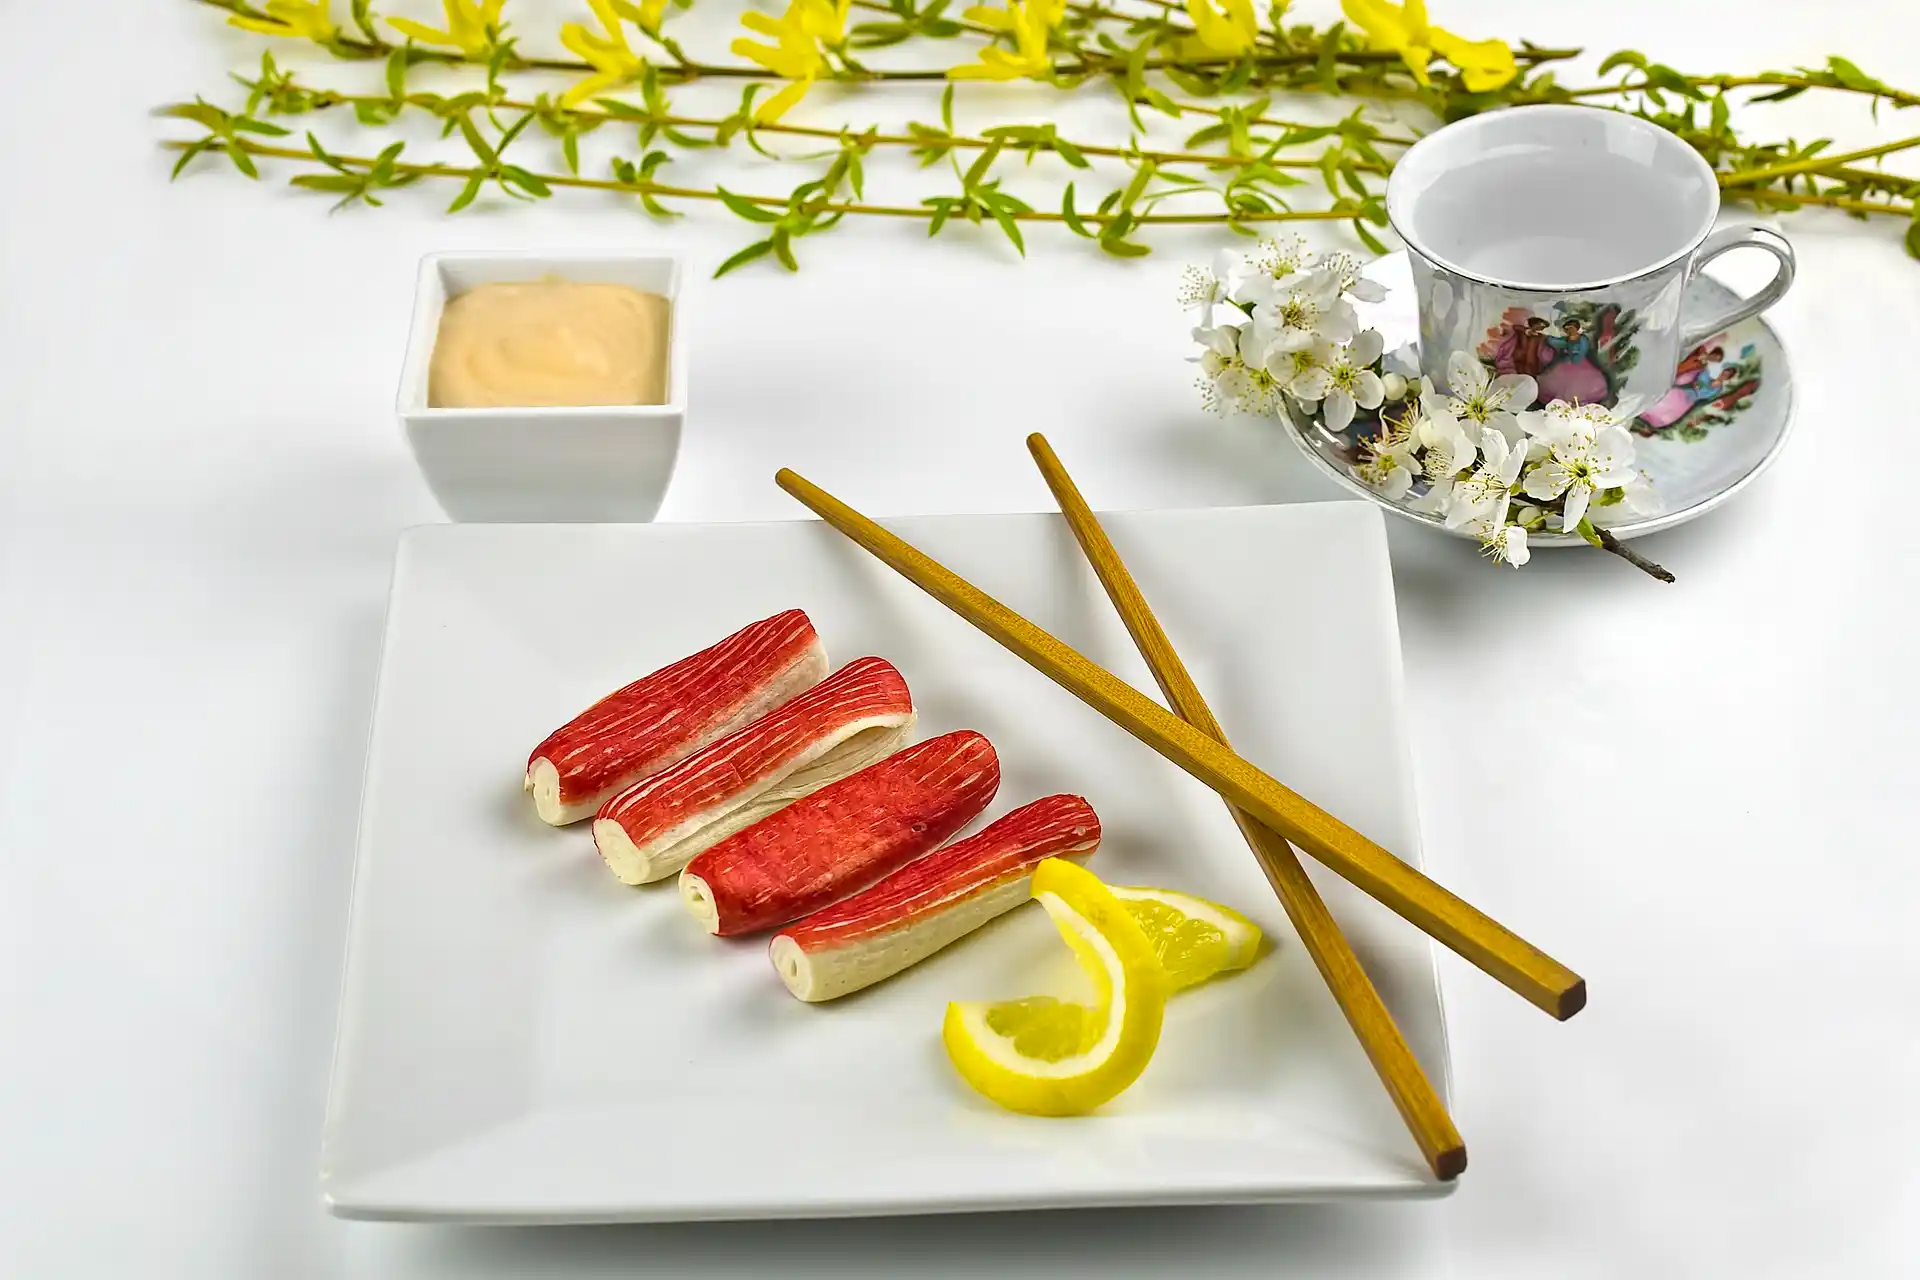 El origen del surimi se remonta a una práctica ancestral japonesa / Foto: PB